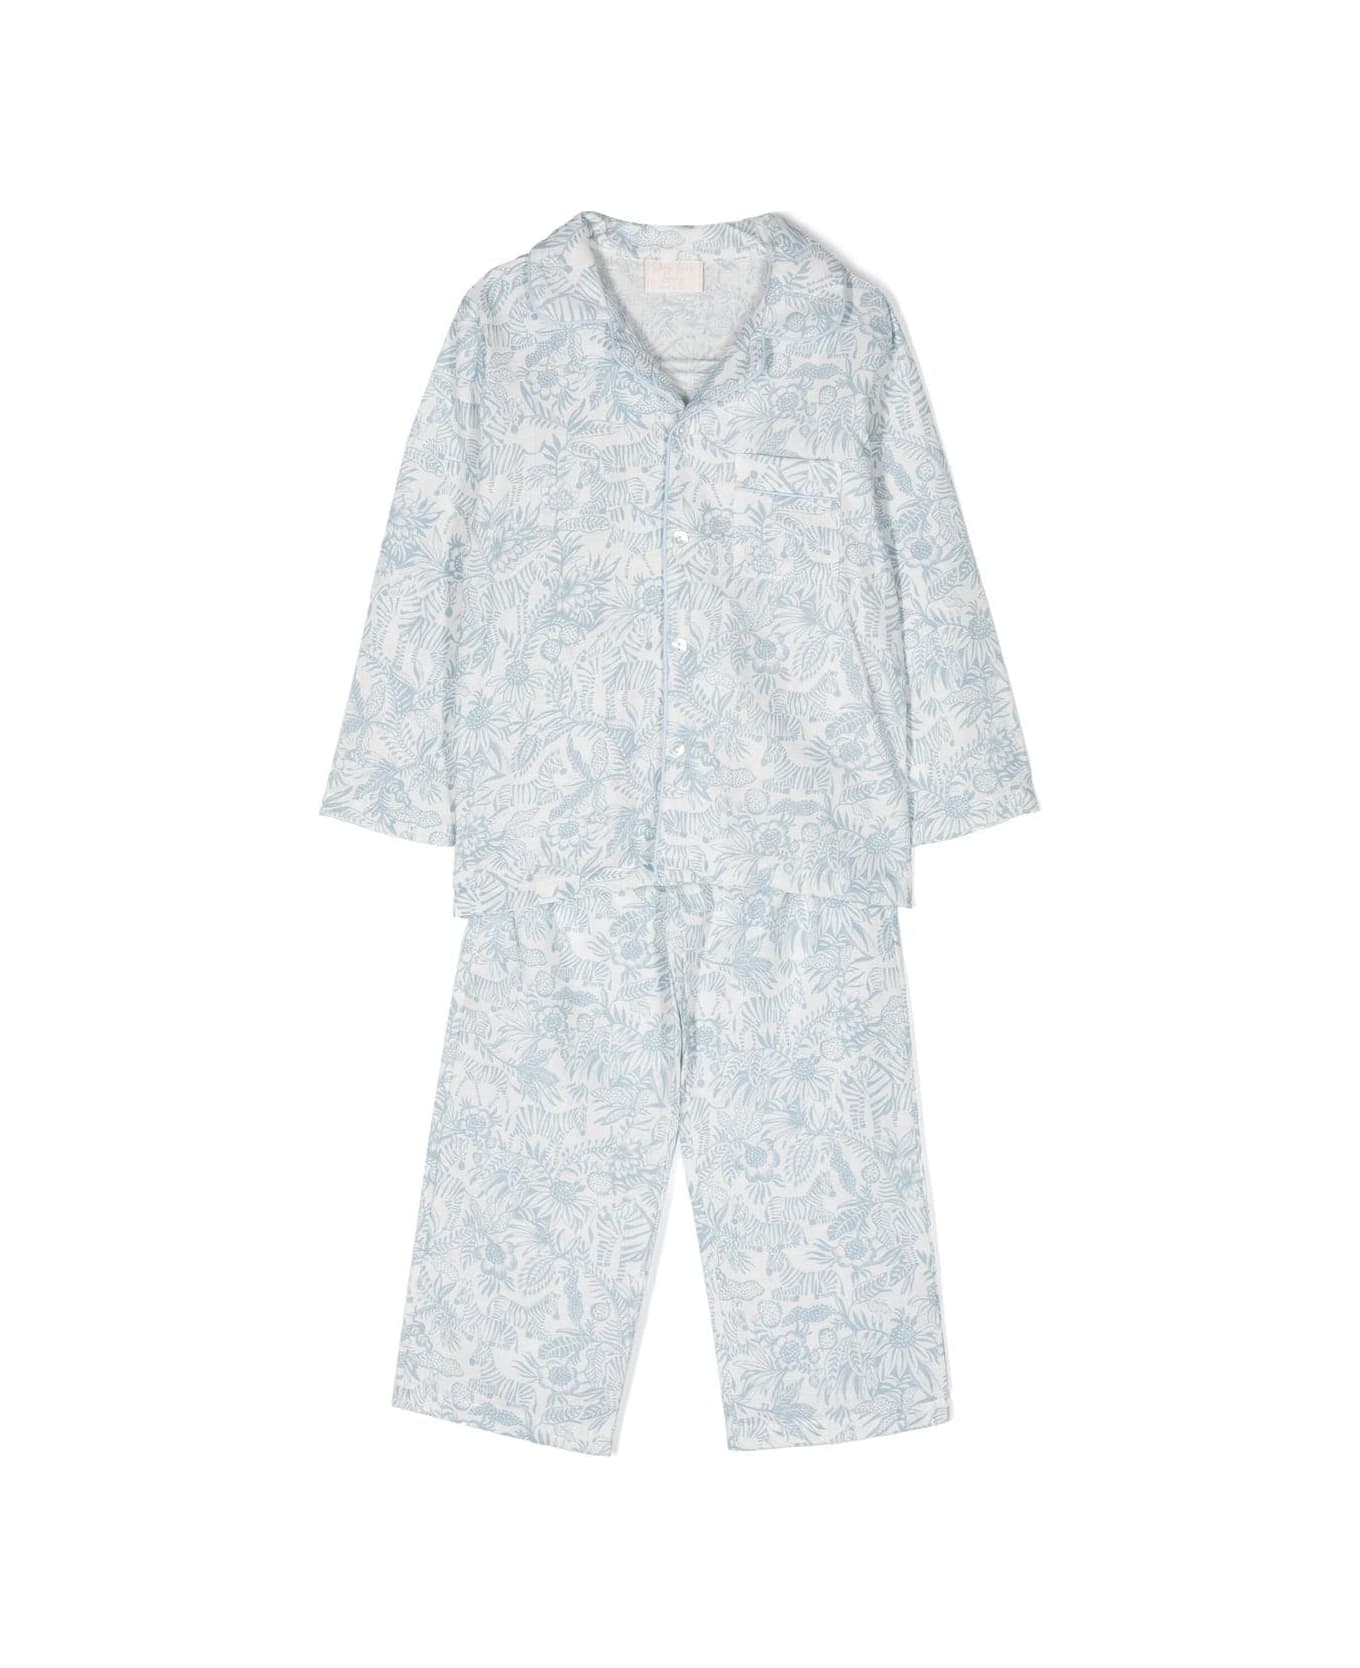 Story Loris Pajamas With Print - White